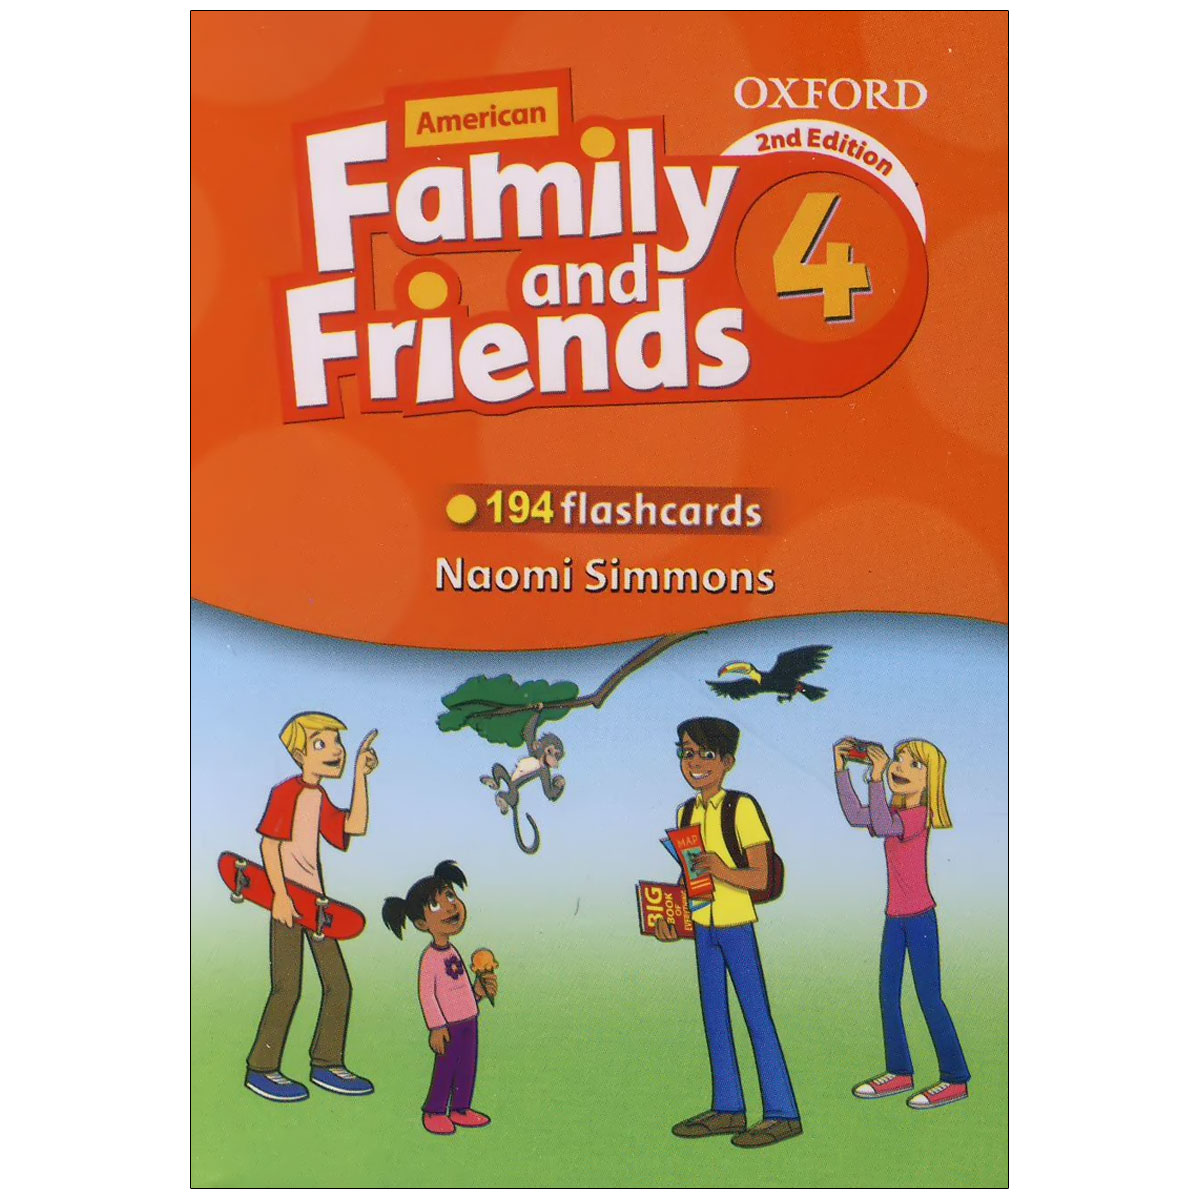 Френд энд фэмили. \Фэмили энд френдс 2 издание. Naomi Simmons. Фэмили энд френдс 1. Оксфорд Family and friends 4.